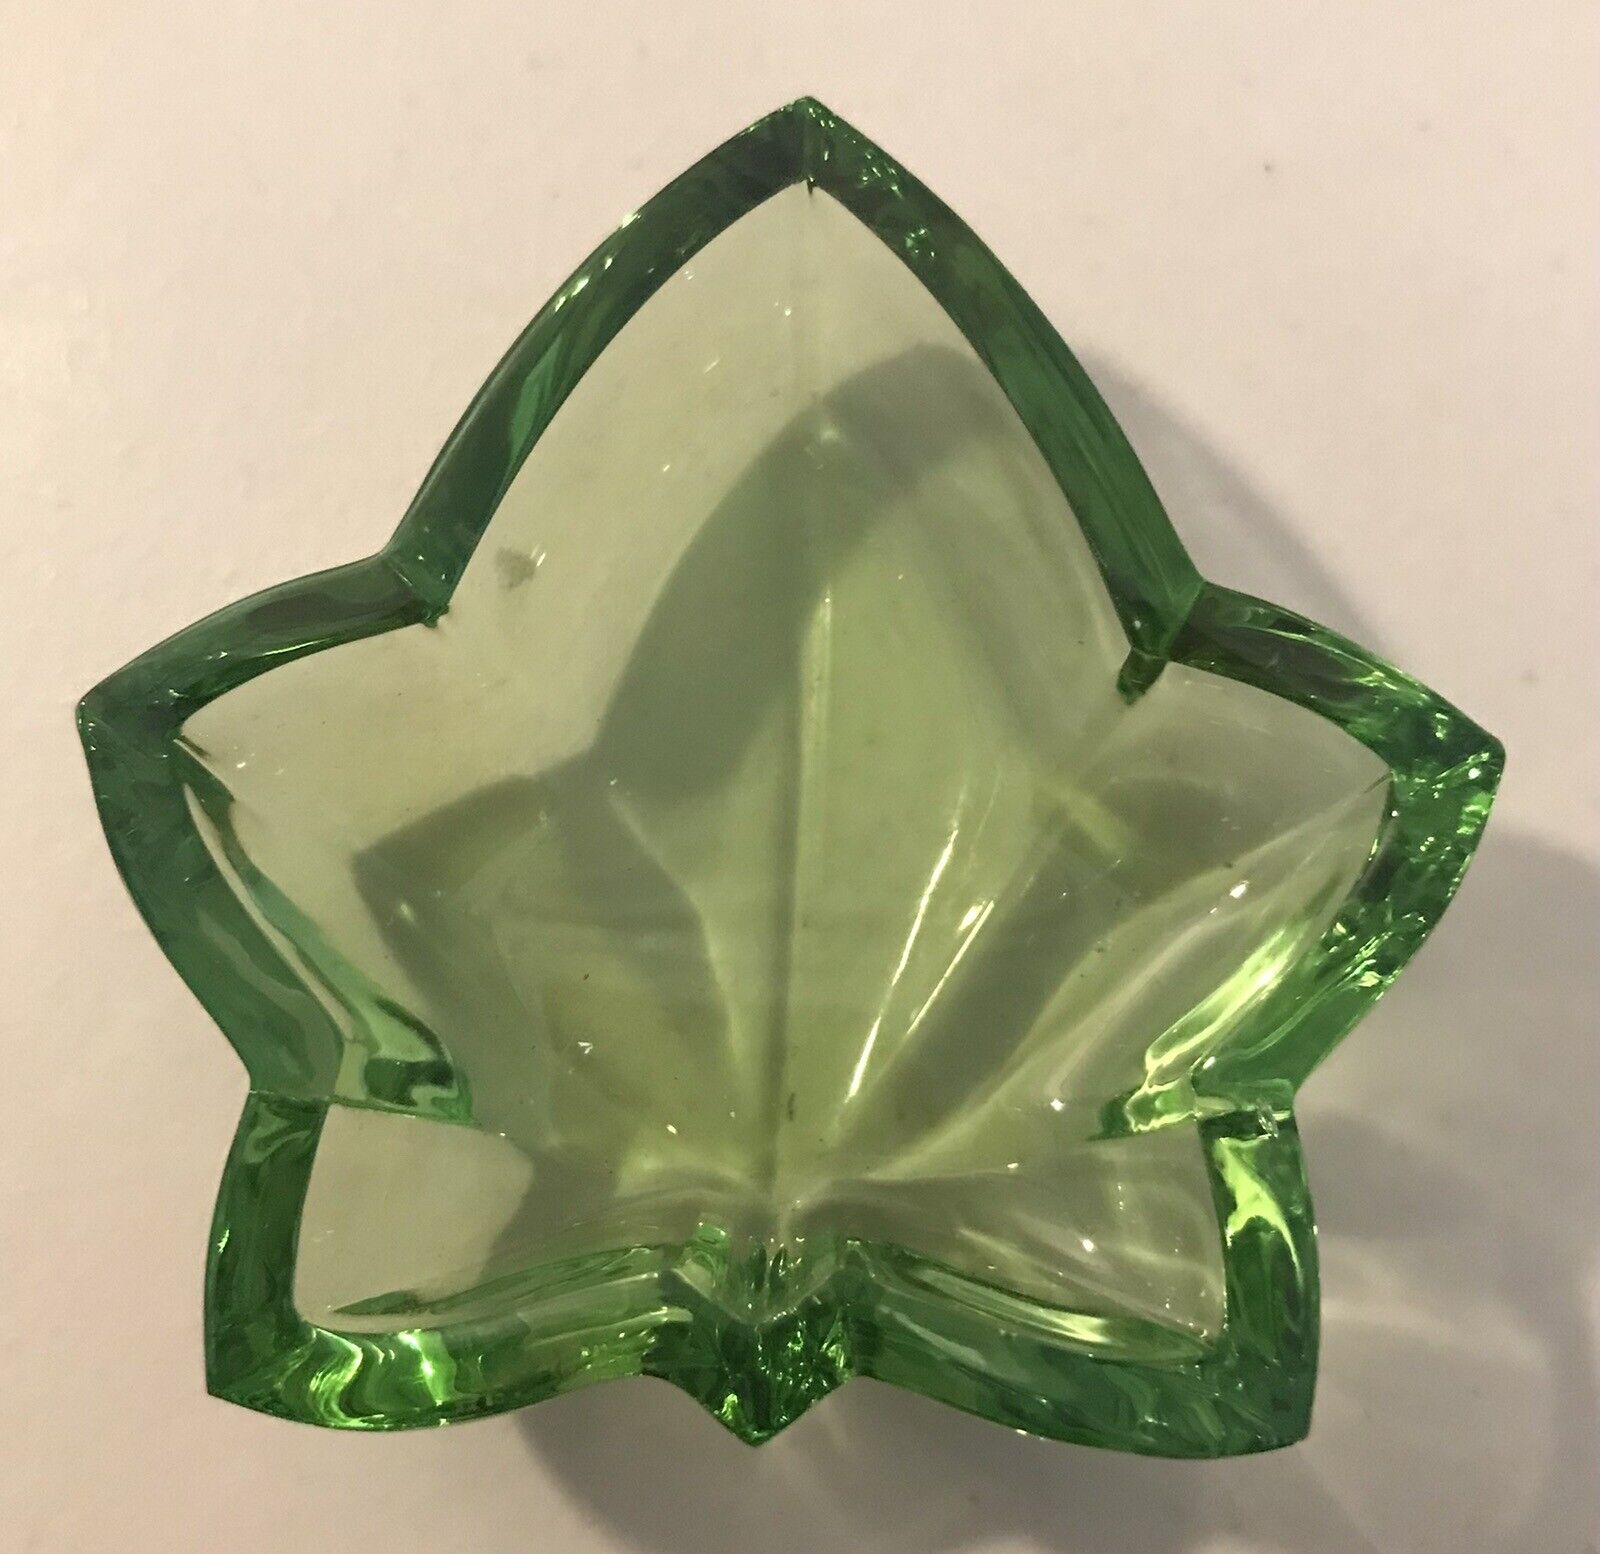 Cristal Sevres Crystal Green Leaf Shaped Top Lid Trinket MCM France